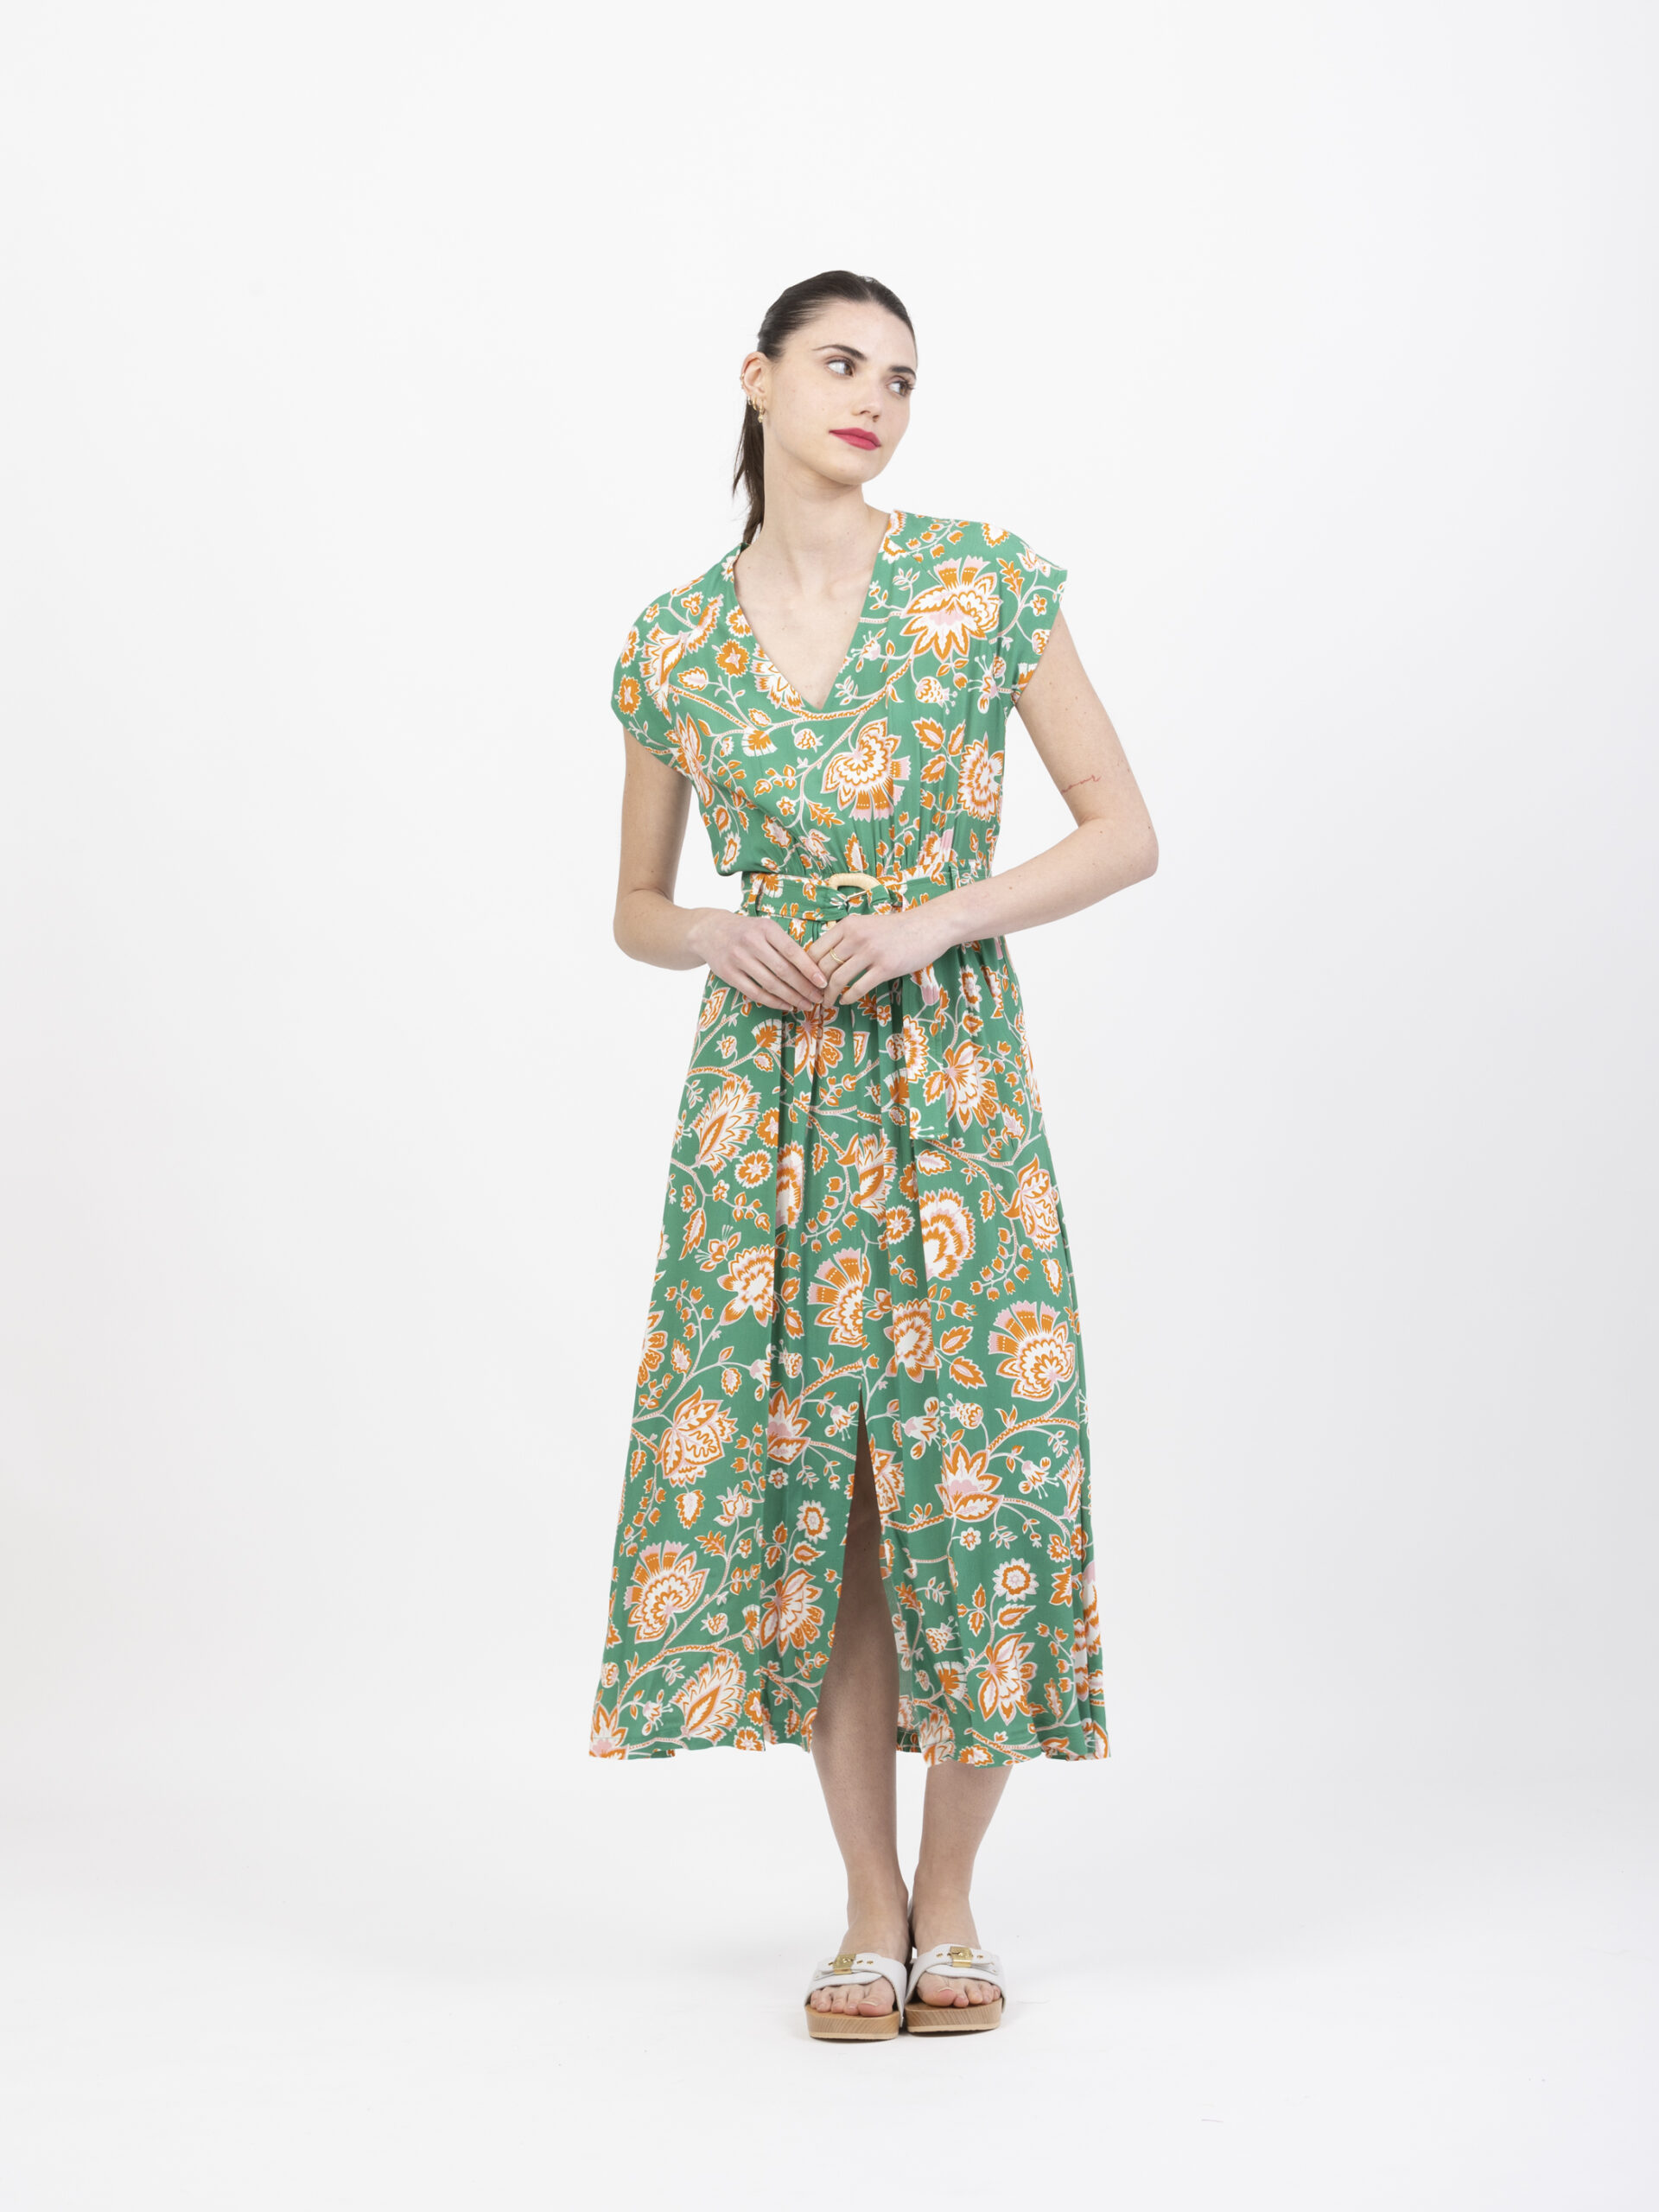 relachee-green-floral-dress-petite-francaise-matchboxathens-shop-online-buy-athens